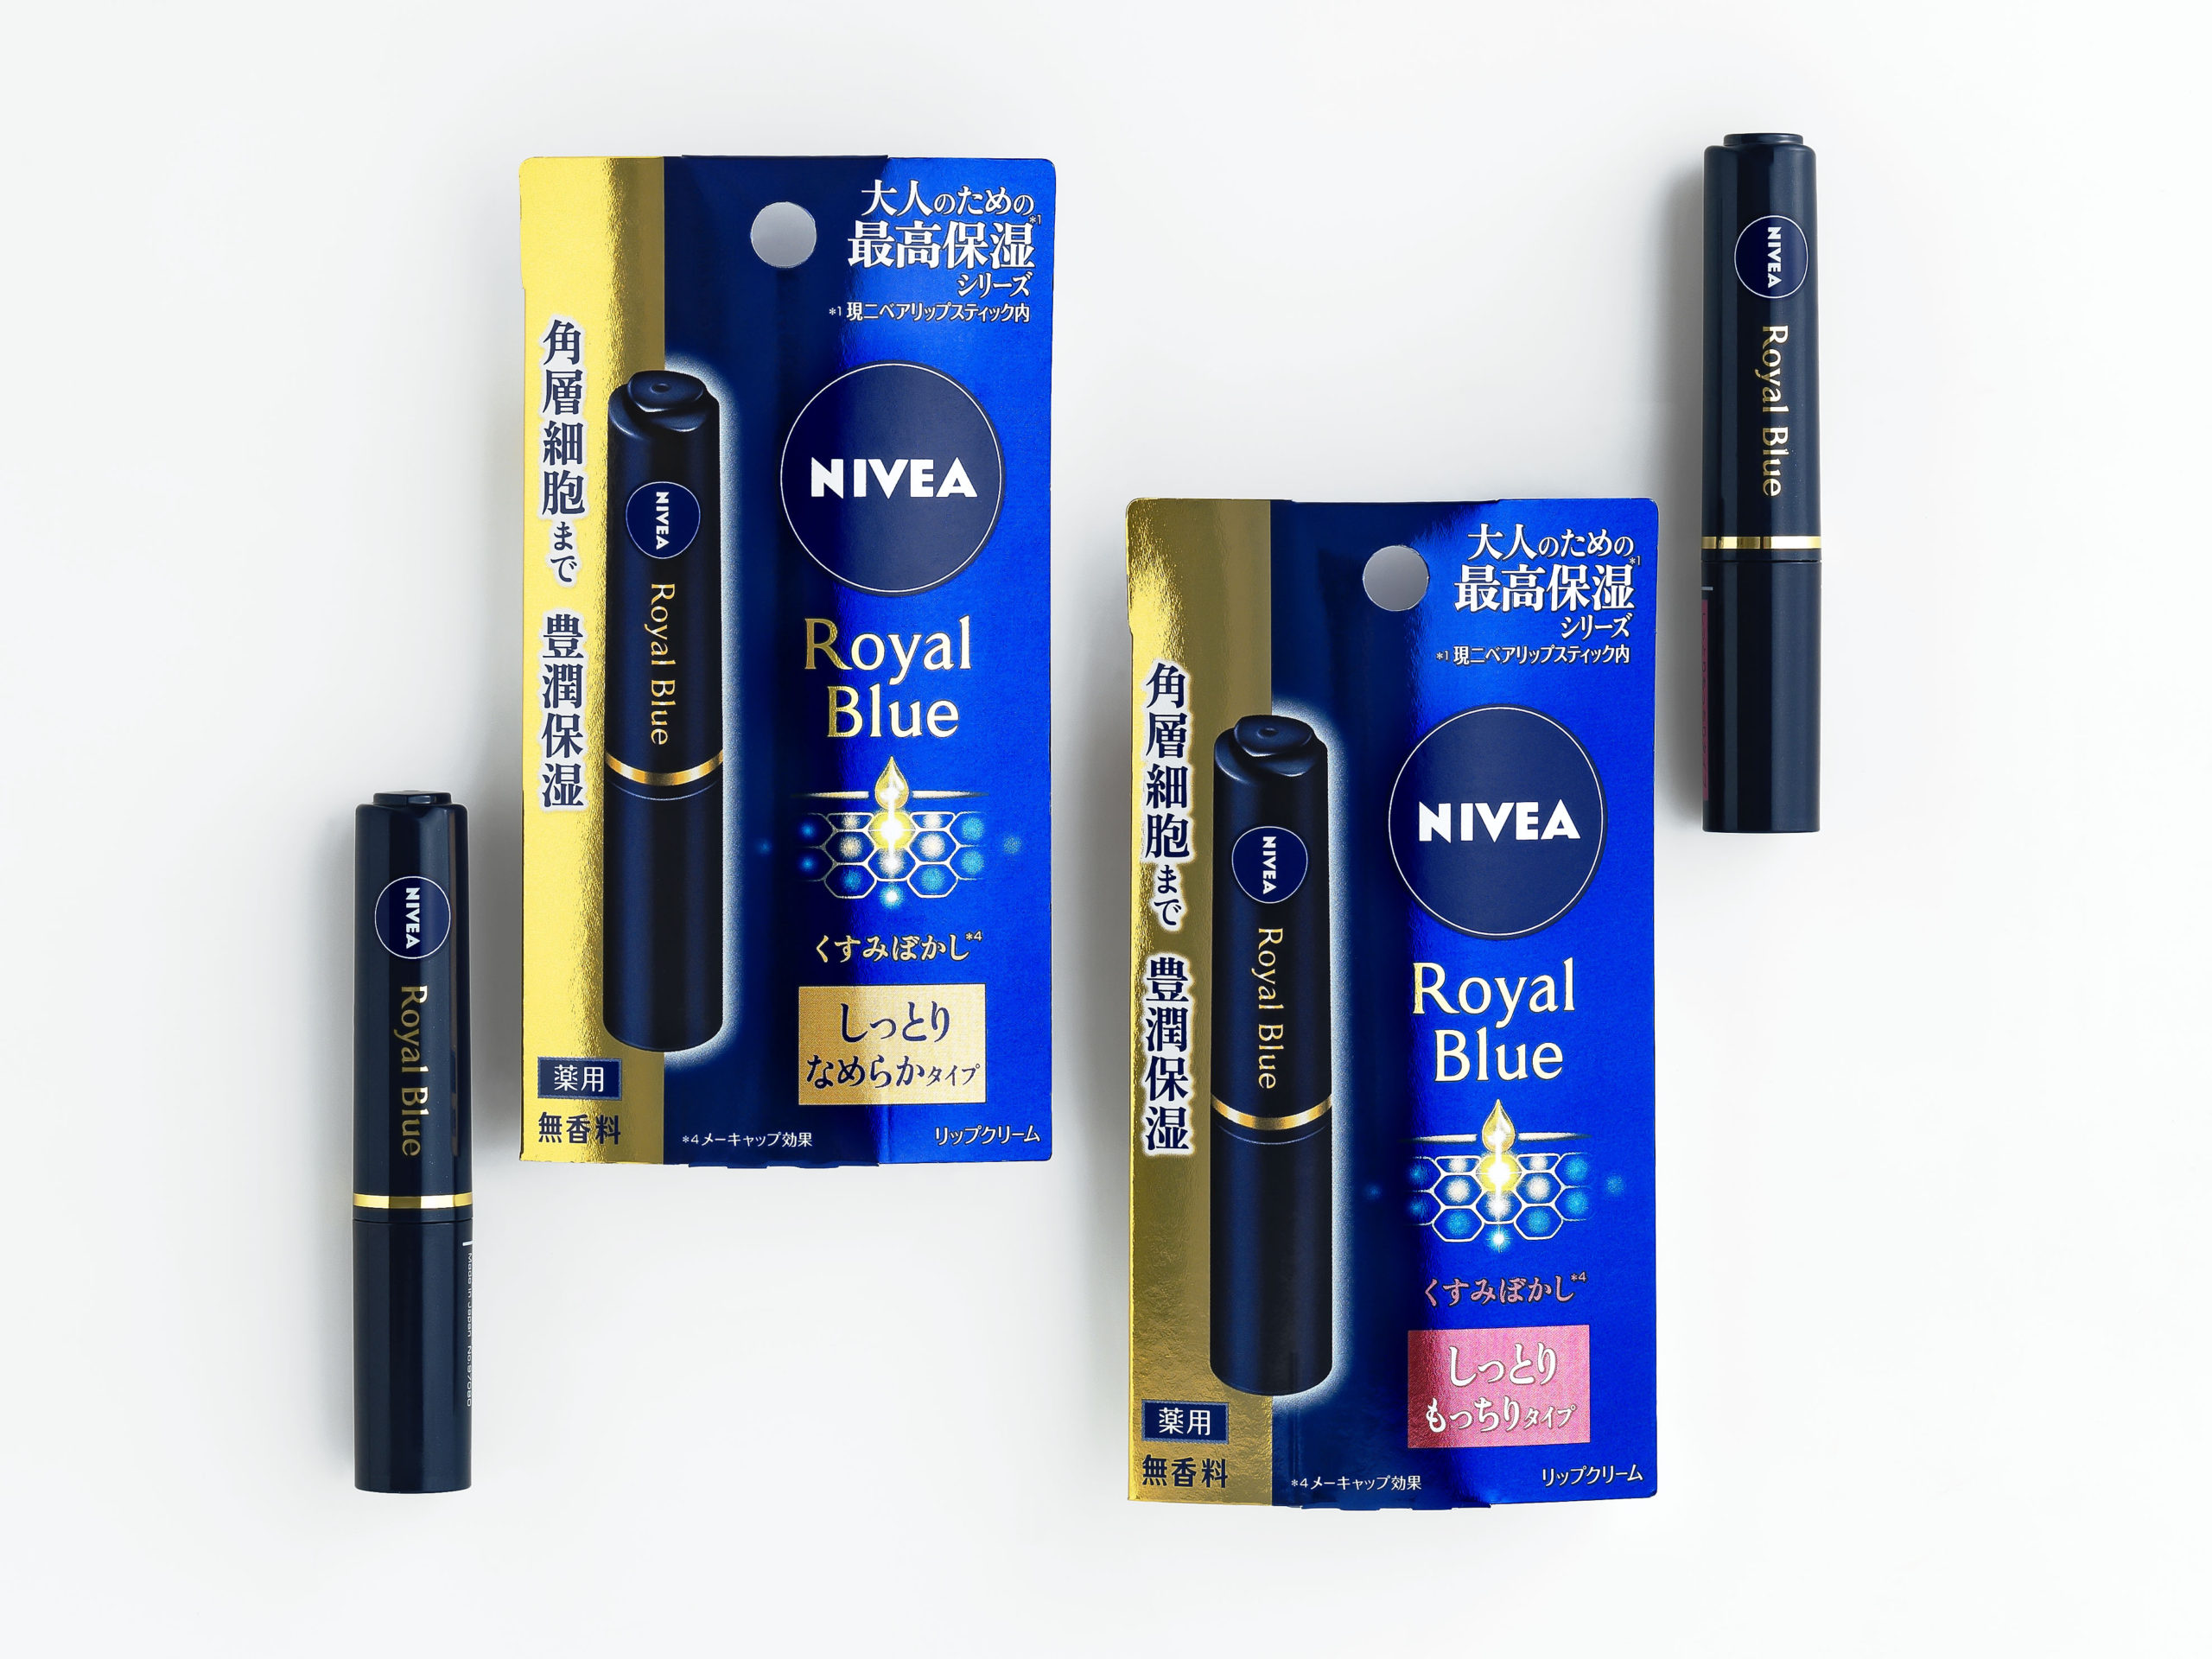 NIVEA Royal Blue